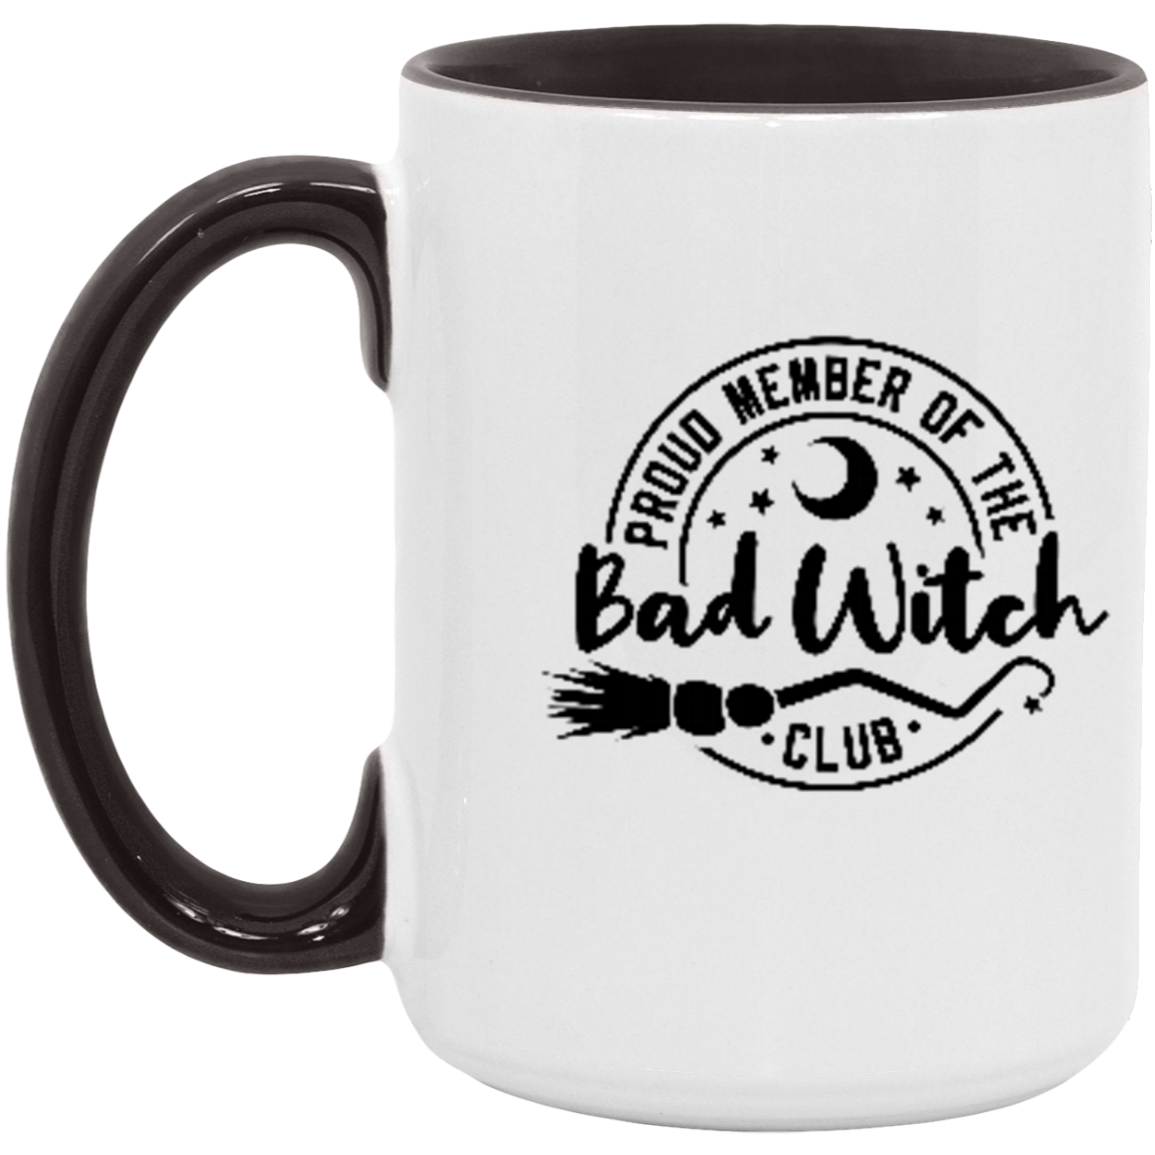 Bad Witch Club Coffee Mug